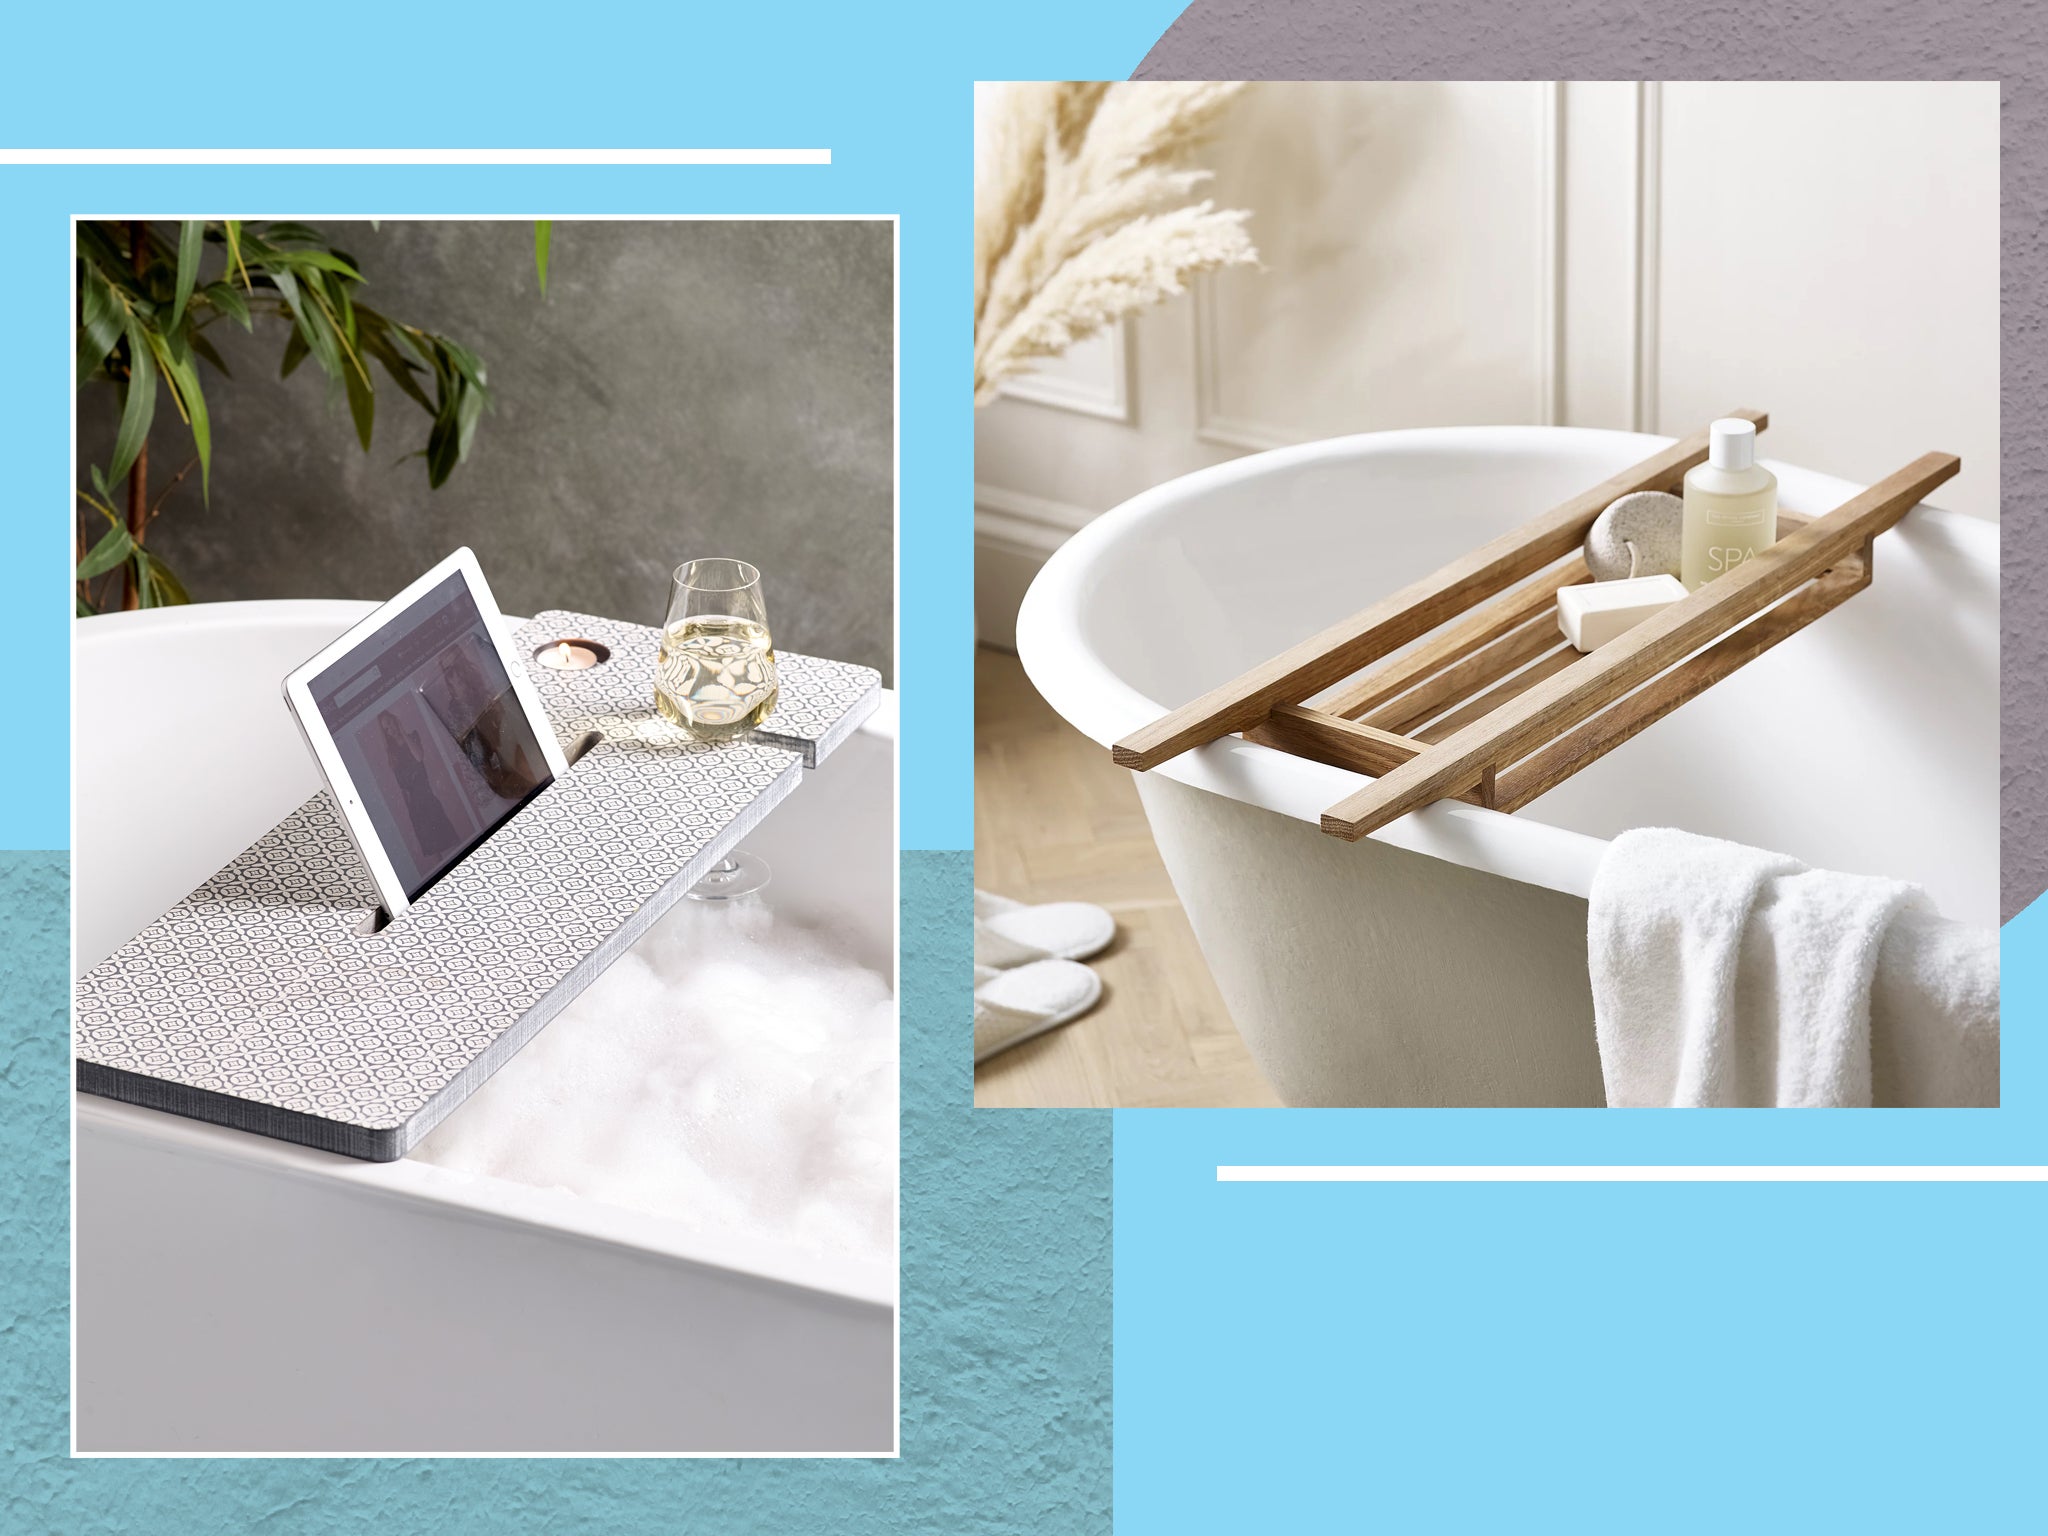 Wooden Bath Caddy, Bath Tray, iPad Stand, Book Shelf, Wine Holder, Bathroom  Decor, Gift Idea 